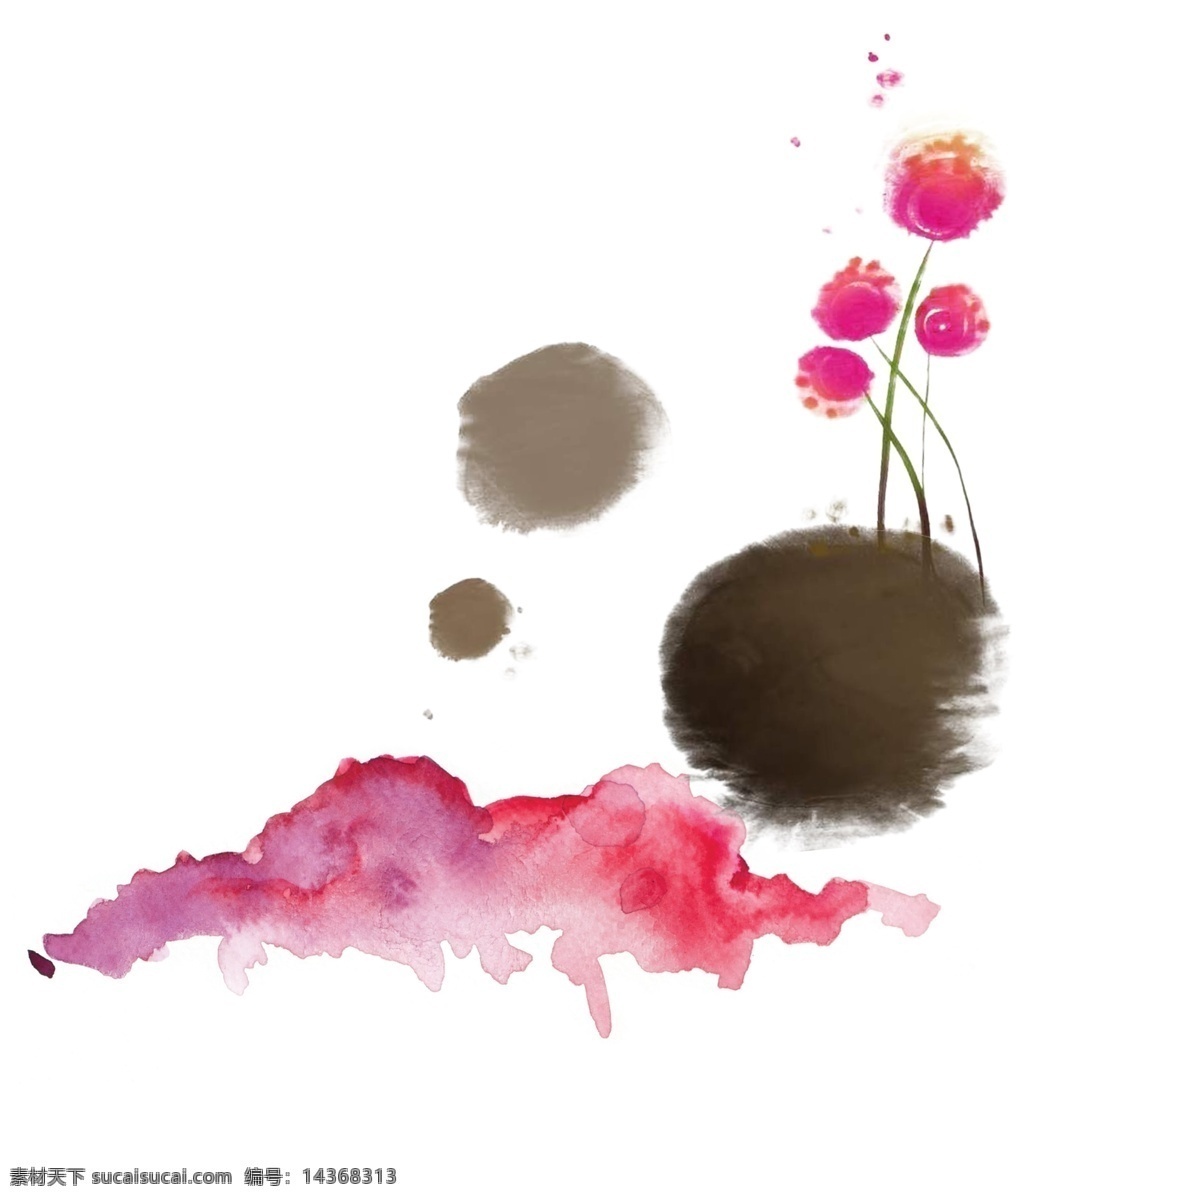 水墨艺术画 抽象 笔墨 花卉 简约时尚 画稿 水纹样 彩墨 彩画 分层